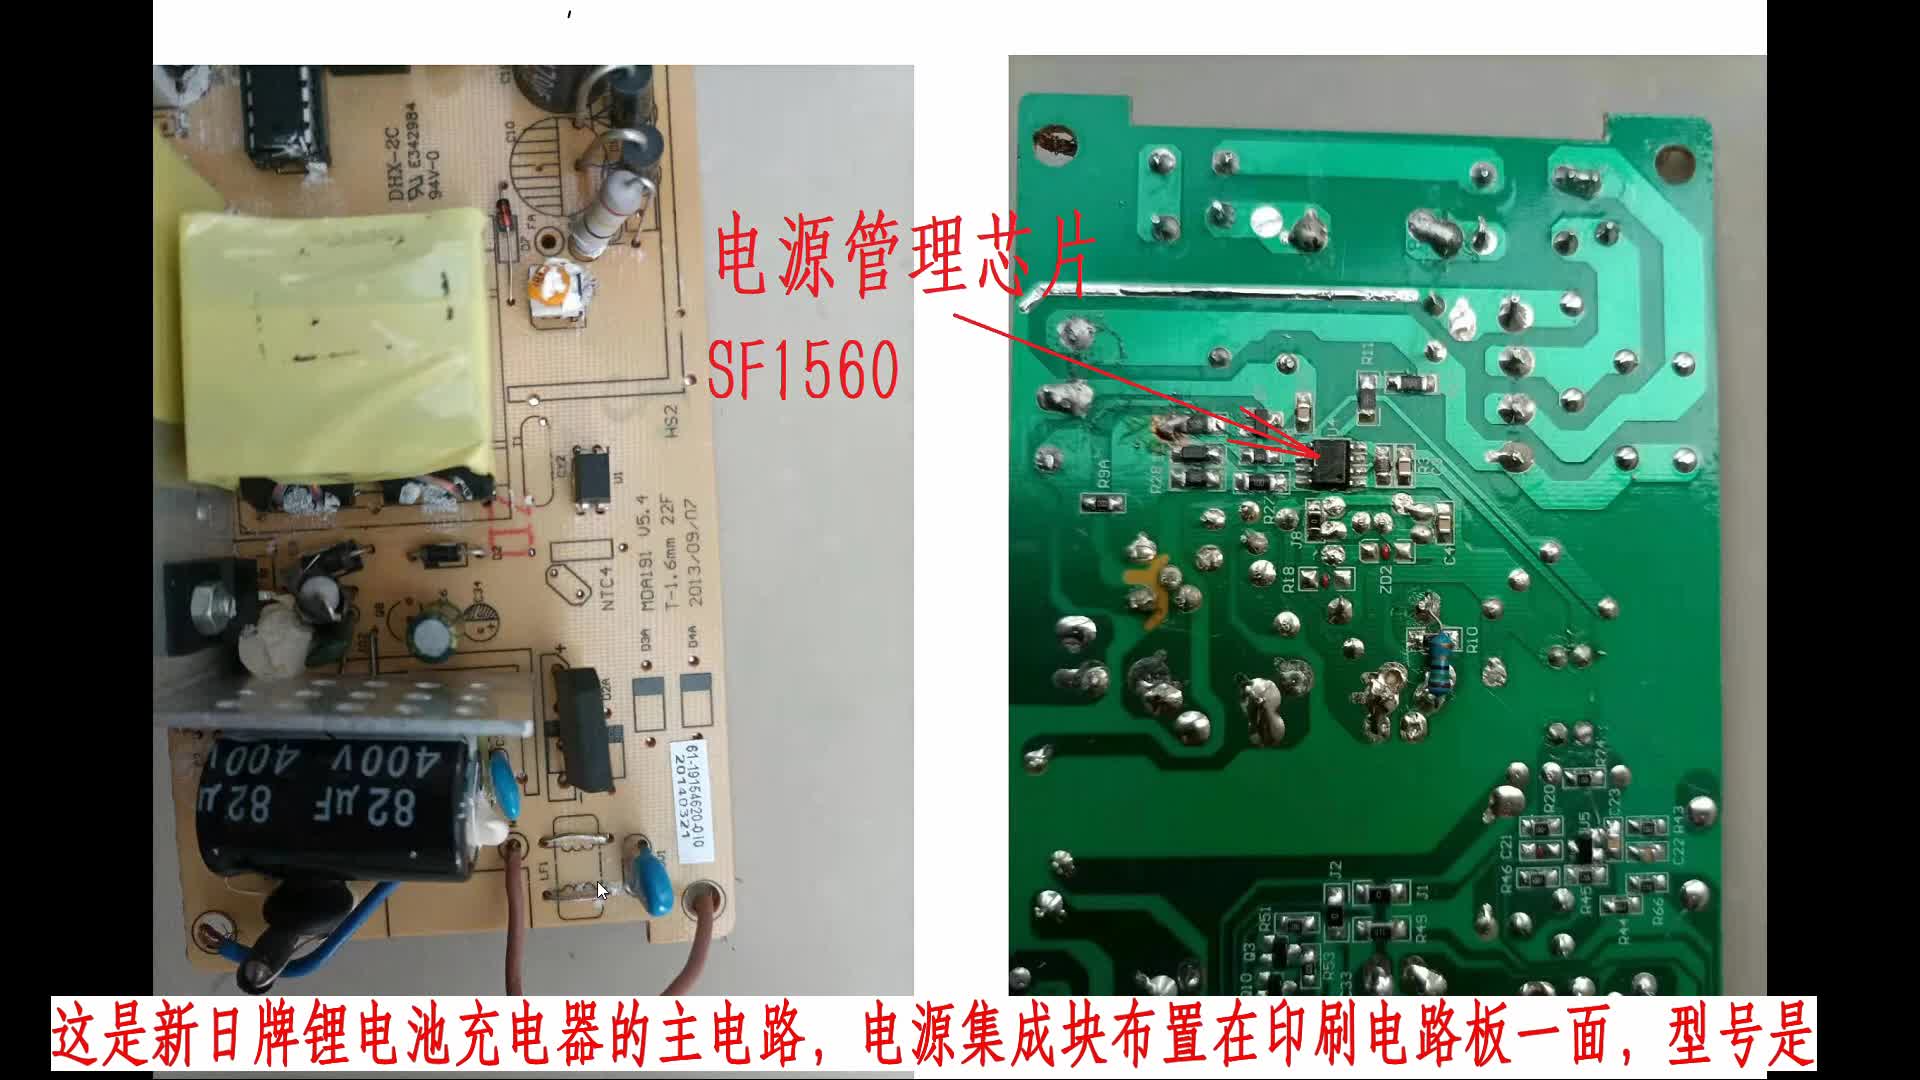 開關電源芯片SF1560組成的鋰電池充電器主電路原理分析#電路設計 